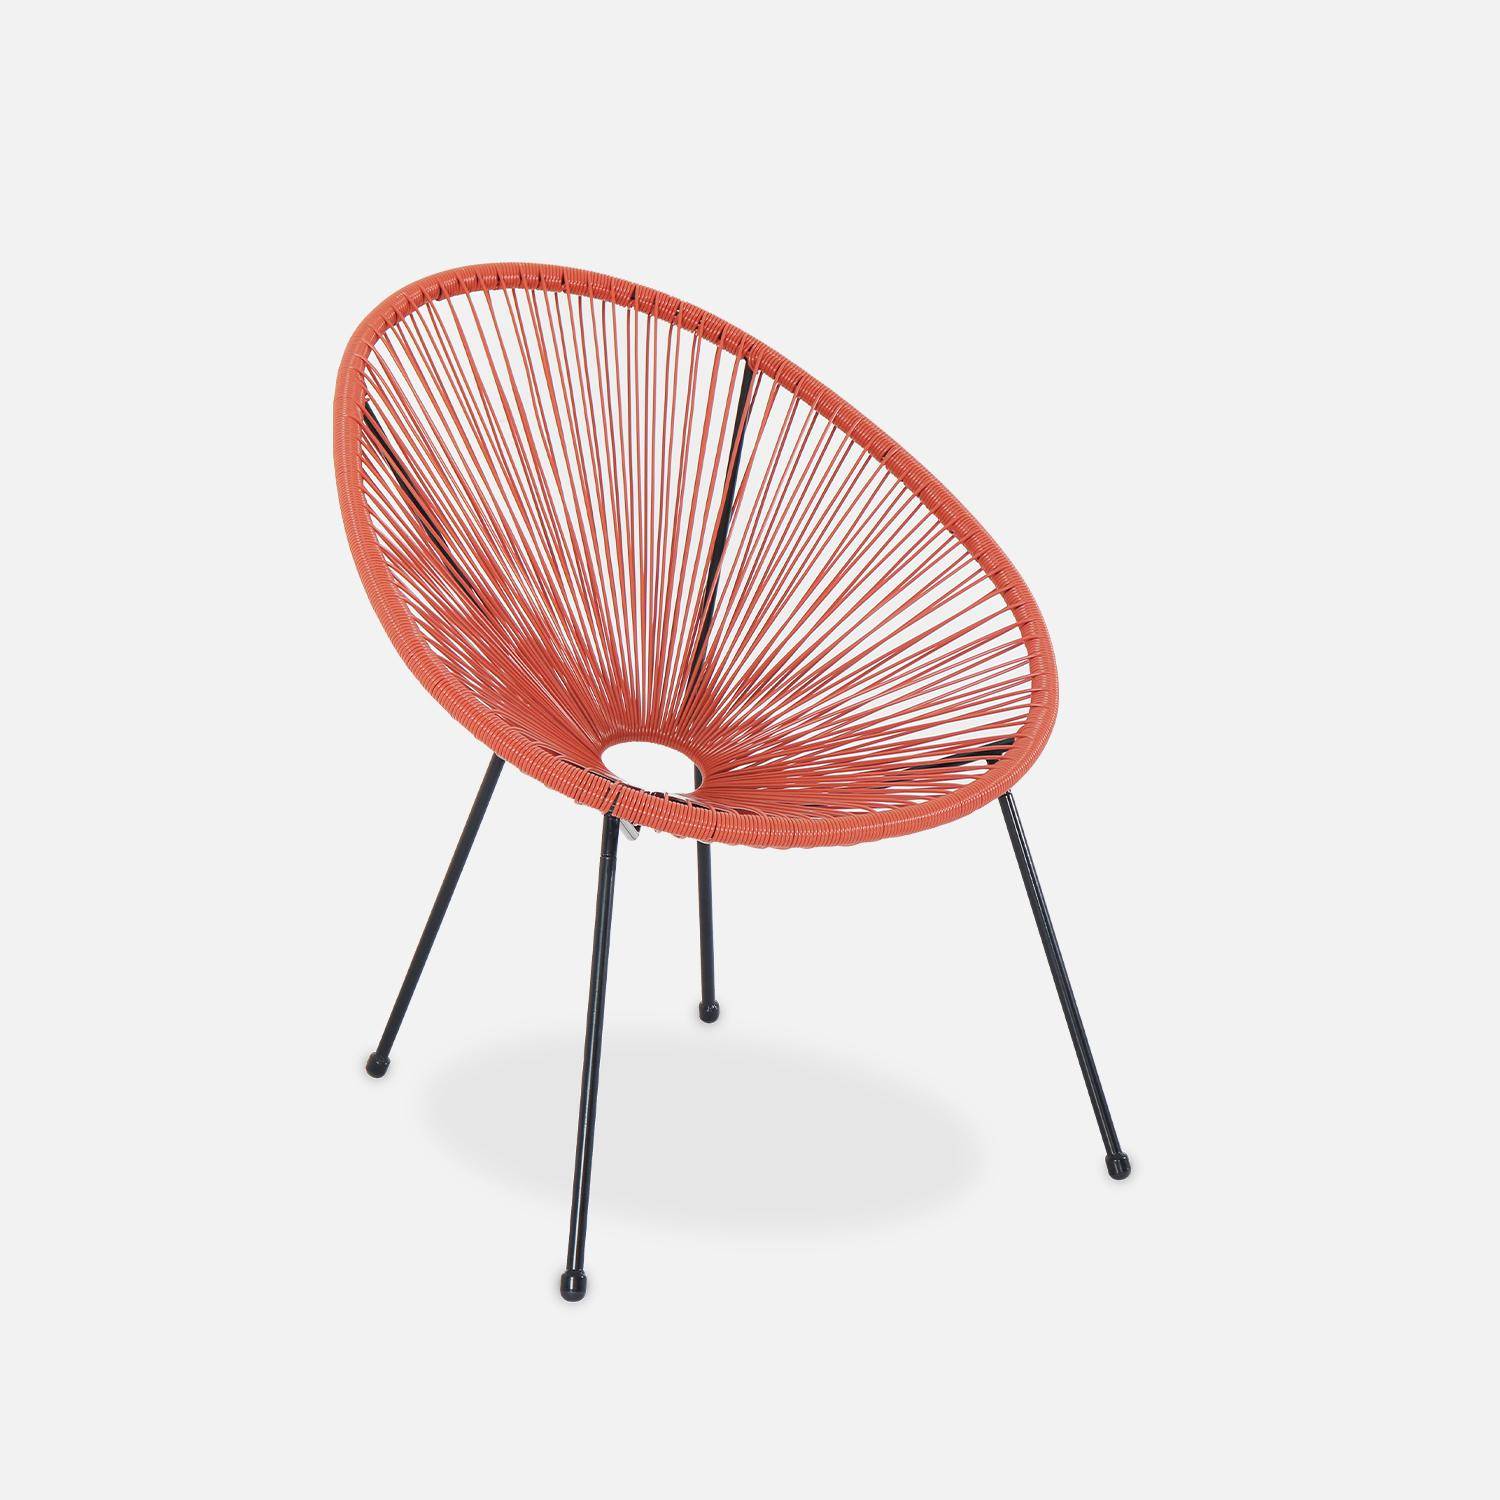 ACAPULCO stoel ei-vormig - Donker Terra Cotta- Stoel 4 poten retro design, plastic koorden, binnen/buiten Photo2